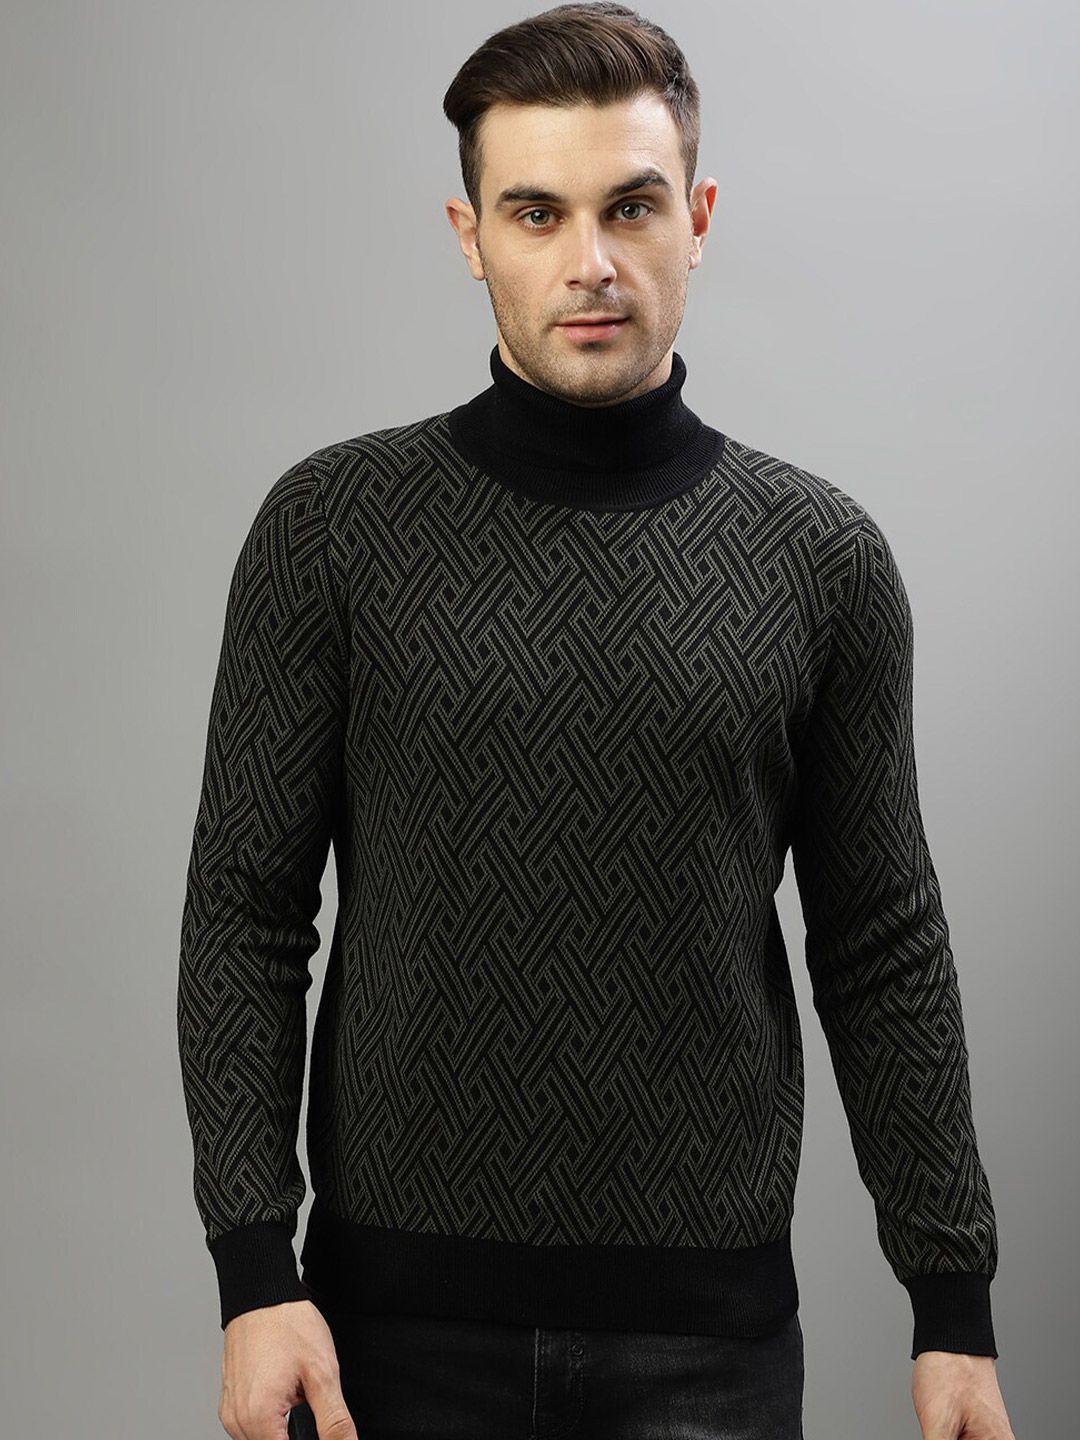 antony morato geometric printed turtle neck pure cotton pullover sweater